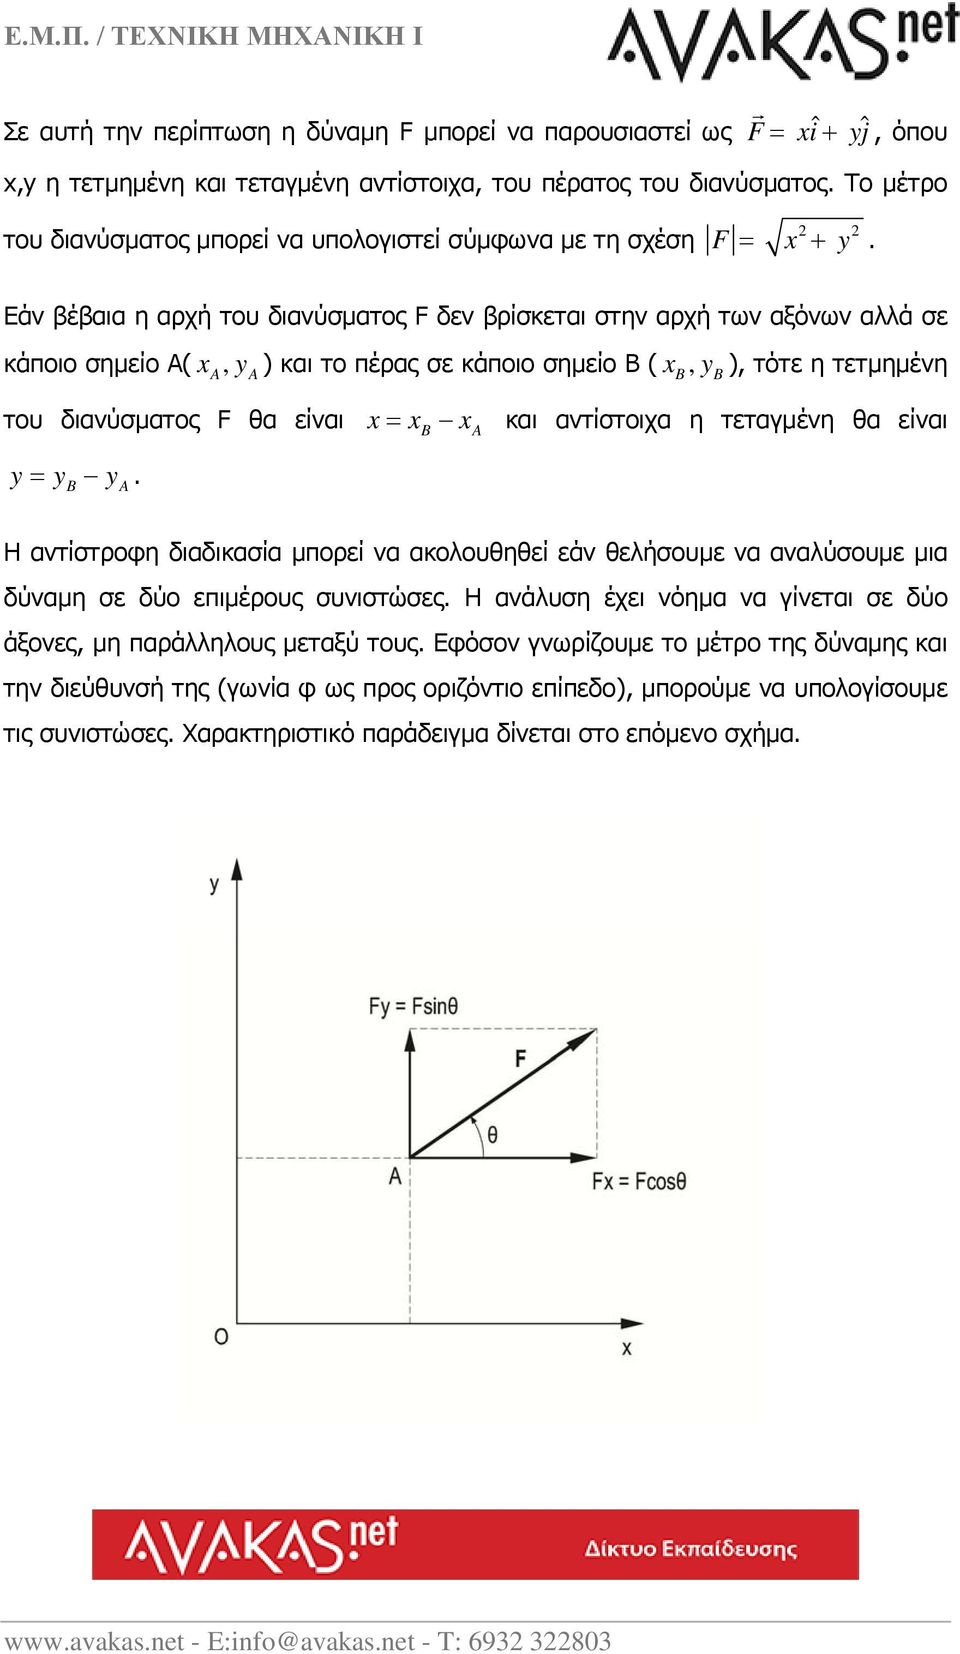 Εάν βέβαια η αρχή του διανύσματος F δεν βρίσκεται στην αρχή των αξόνων αλλά σε κάποιο σημείο Α( x, y ) και το πέρας σε κάποιο σημείο Β ( x, y ), τότε η τετμημένη A A του διανύσματος F θα είναι x xb